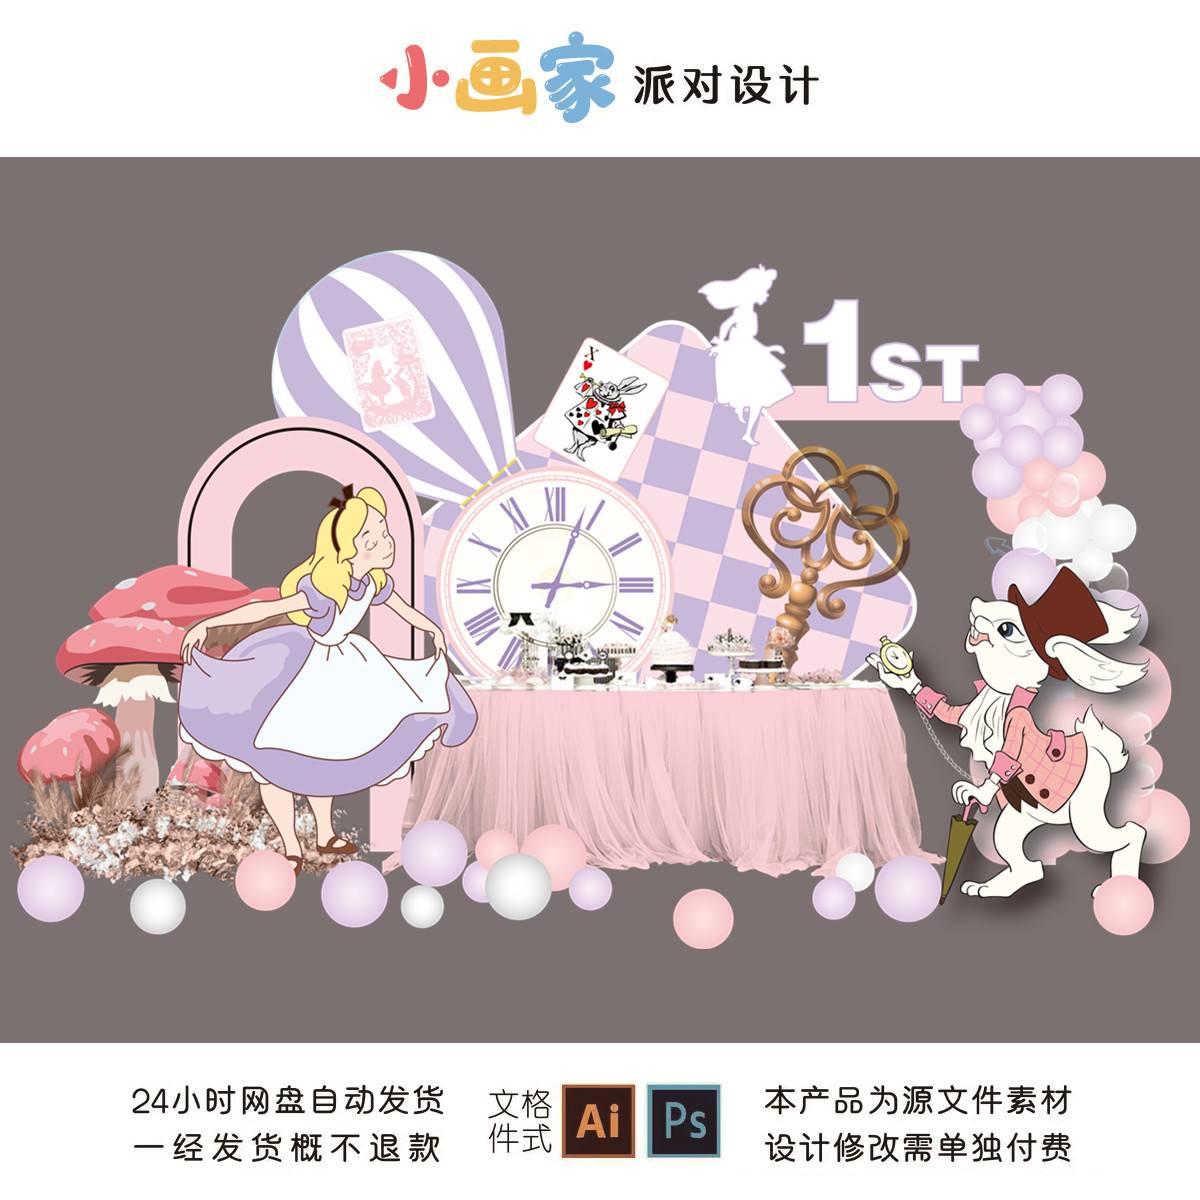 粉紫色爱丽丝公主梦游仙境时钟甜品区气球背景生日派对设计素材PS